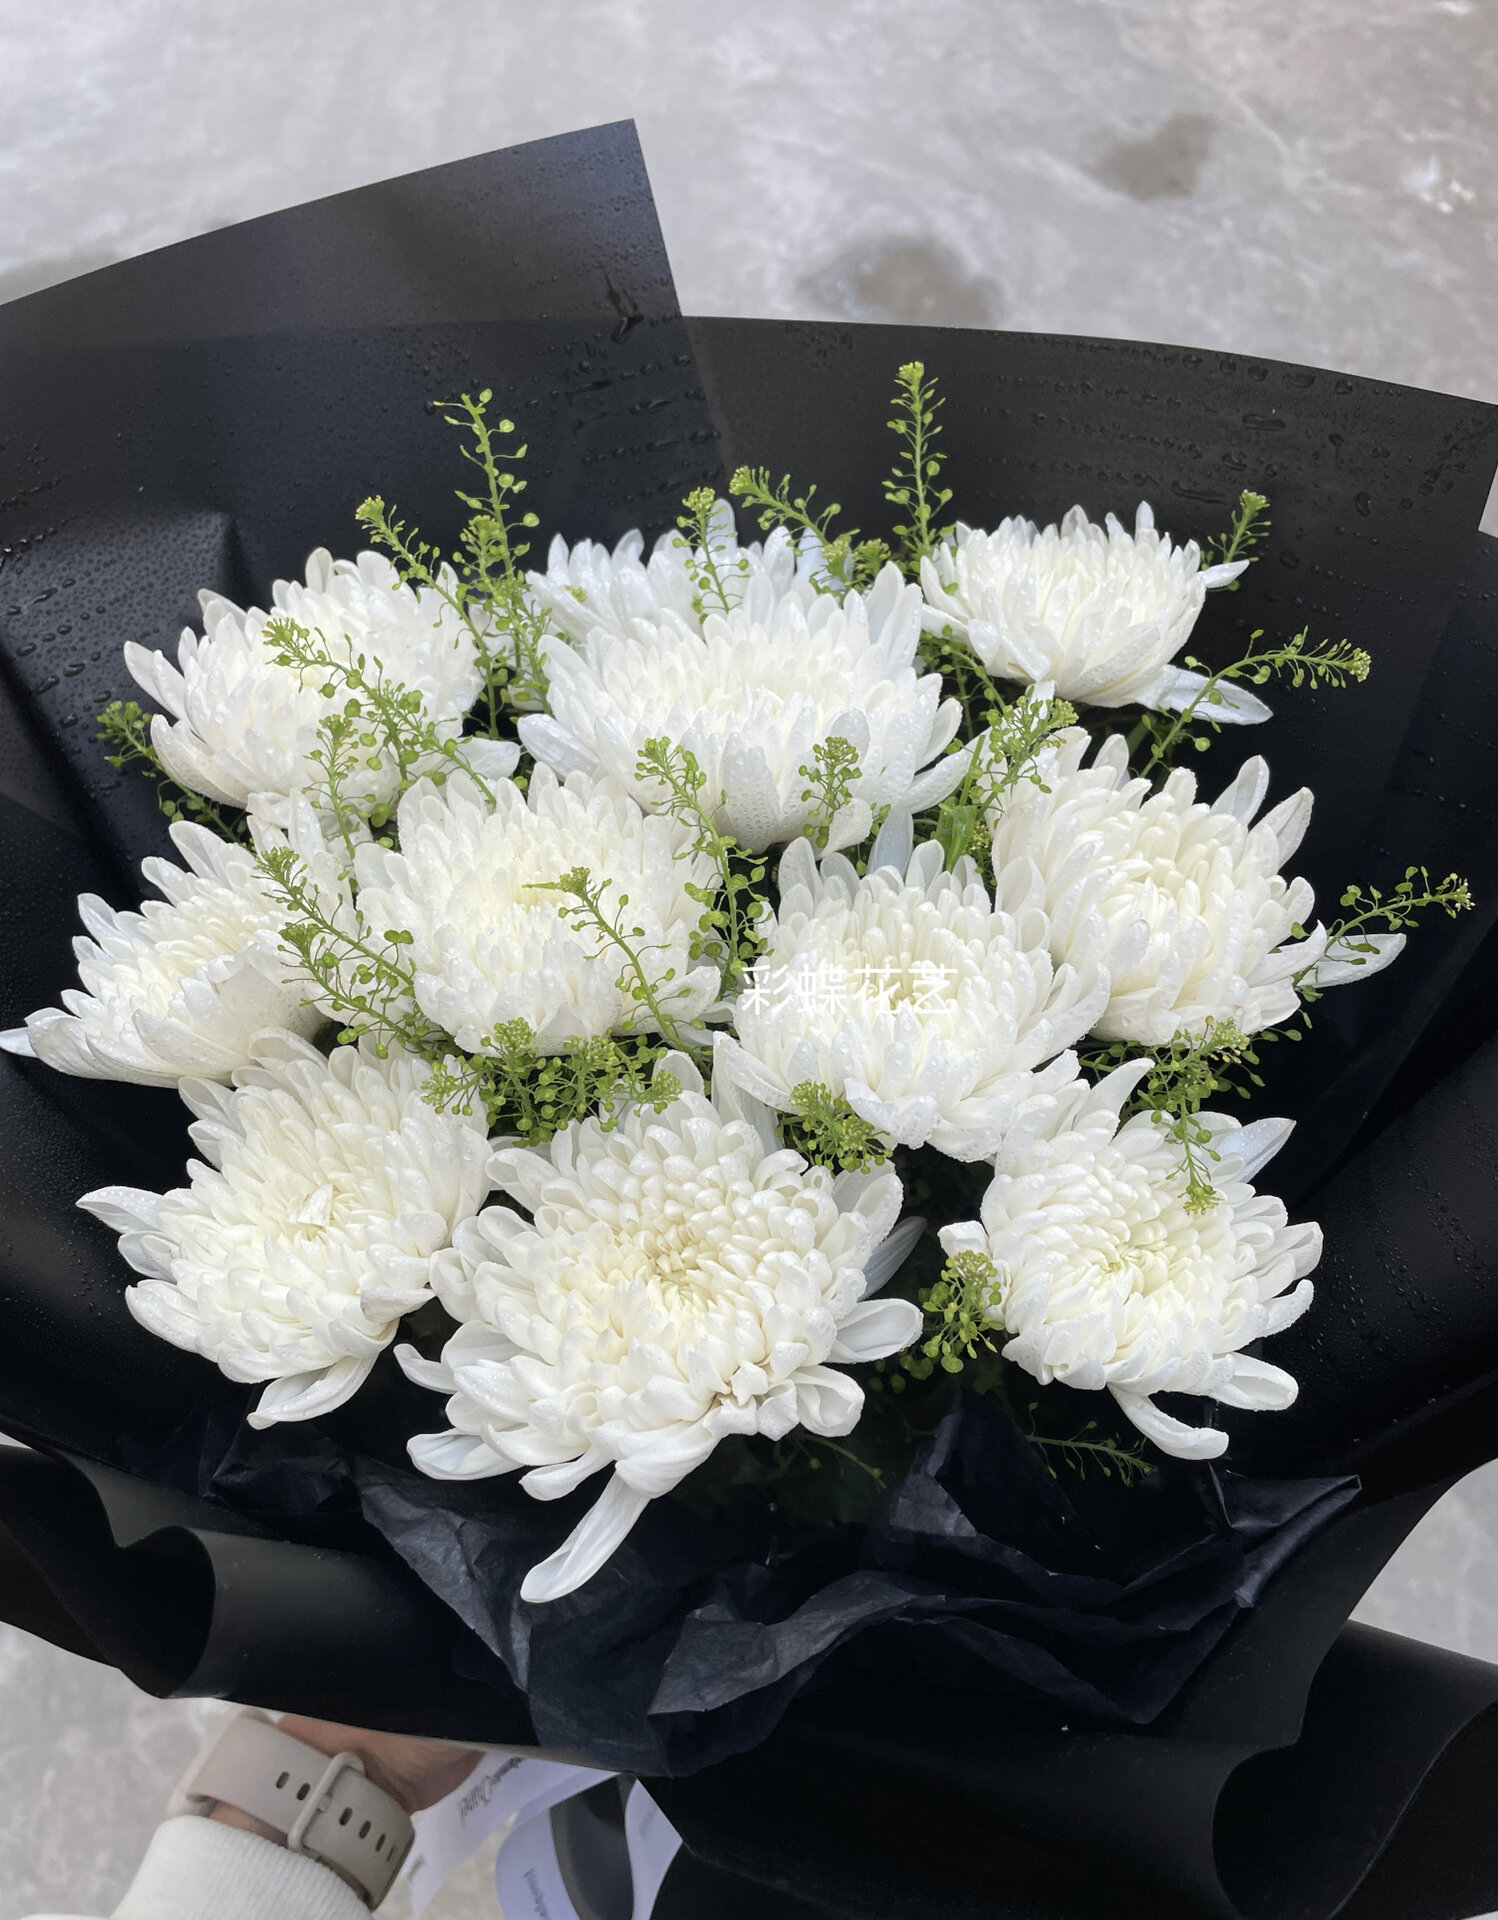 祭祀花束 一束白菊花,表达对他的追忆和追思之情!